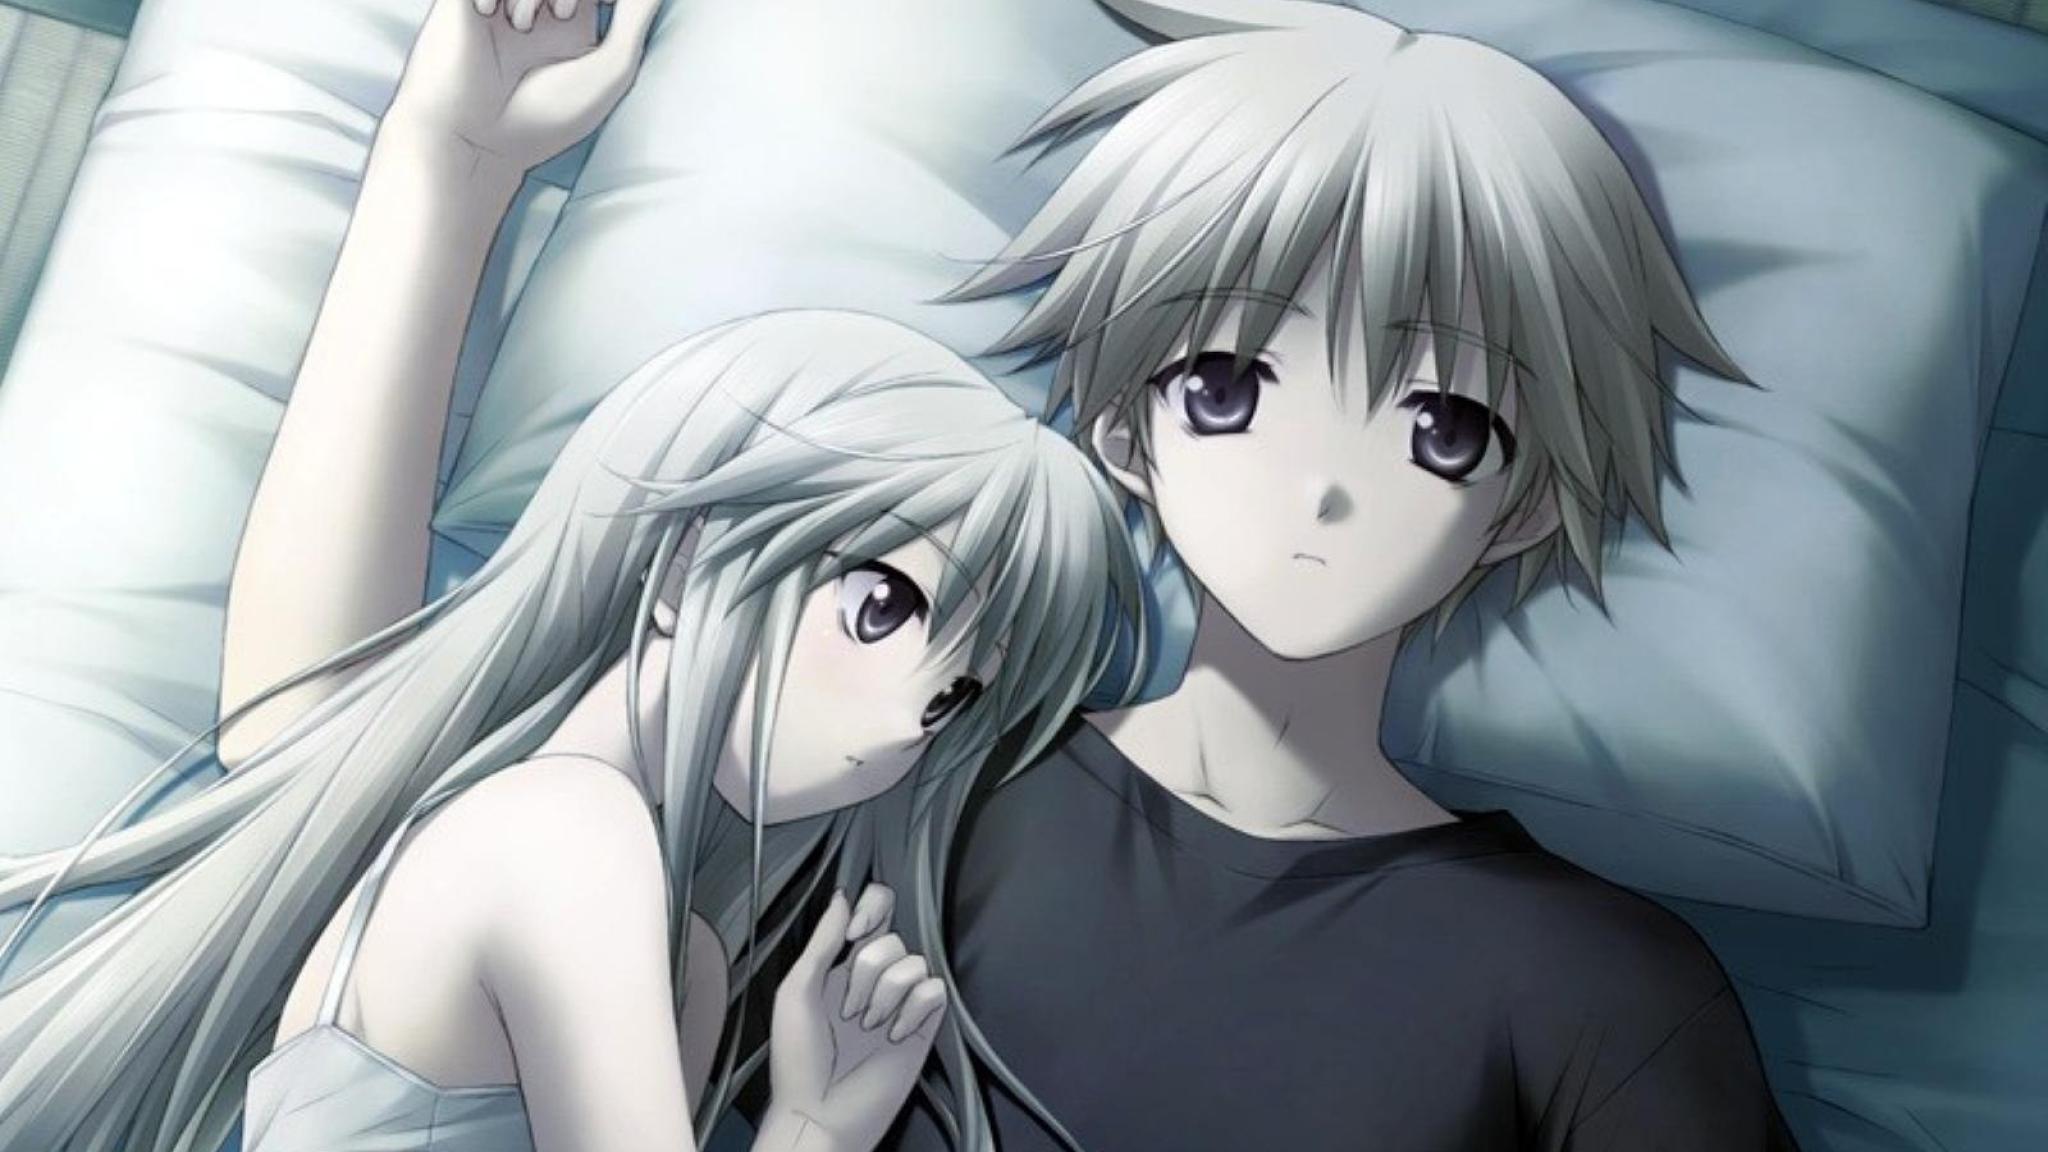 Anime Couple Sleeping GIF | GIFDB.com